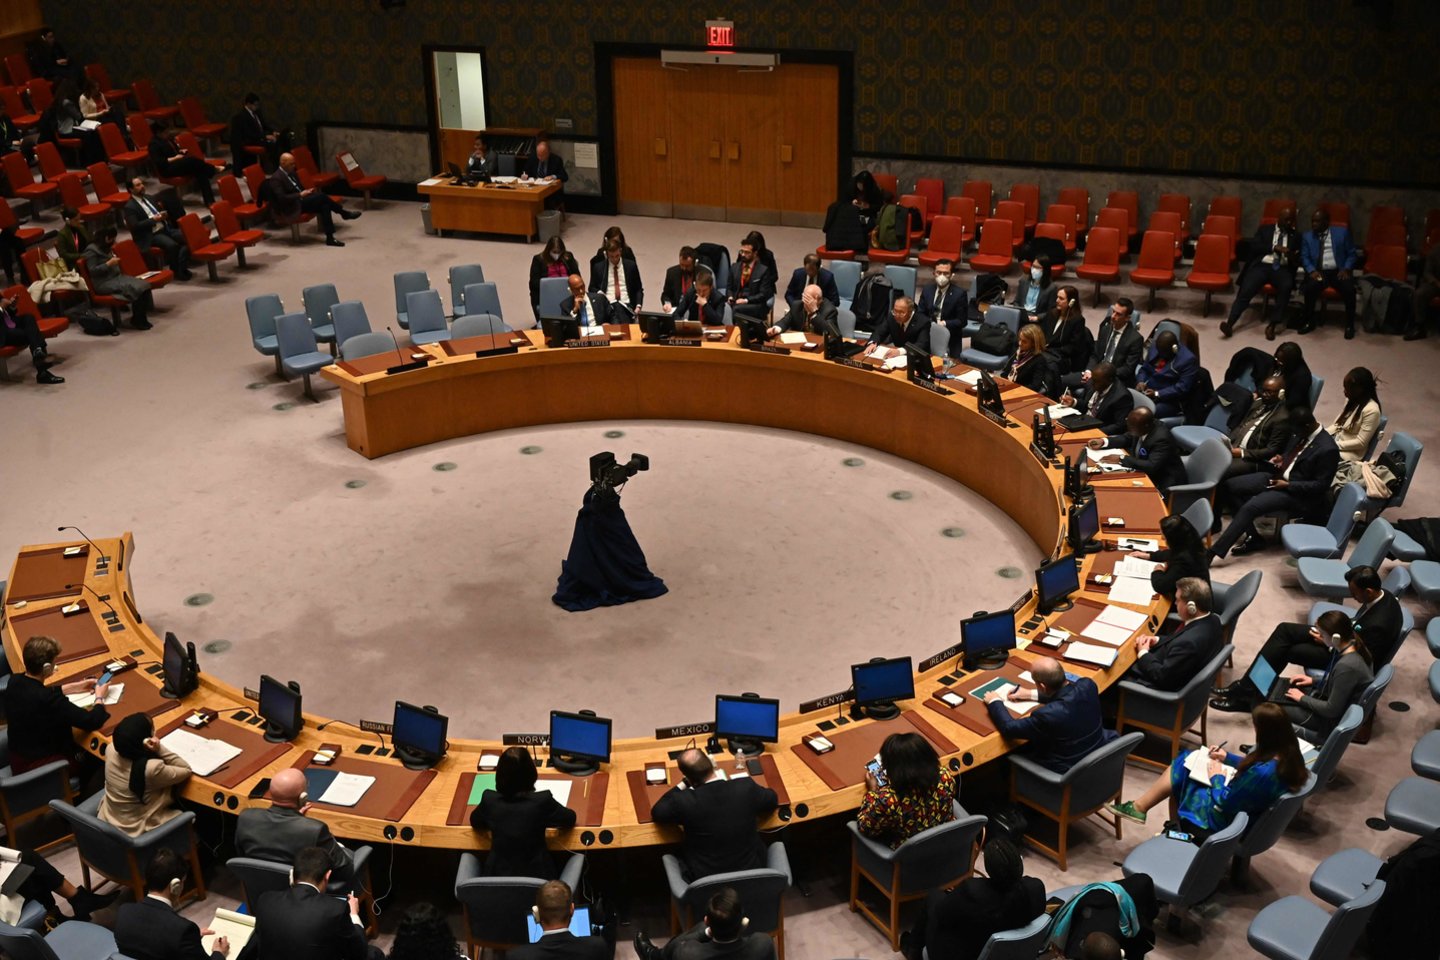 Bendras vaizdas rodo Jungtinių Tautų Saugumo Tarybos posėdį per balsavimą dėl rezoliucijos projekto, kuriame raginama nedelsiant nutraukti smurtą Mianmare ir paleisti politinius kalinius, JT būstinėje Niujorke 2022 m. gruodžio 22 d.<br>AFP/Scanpix nuotr.